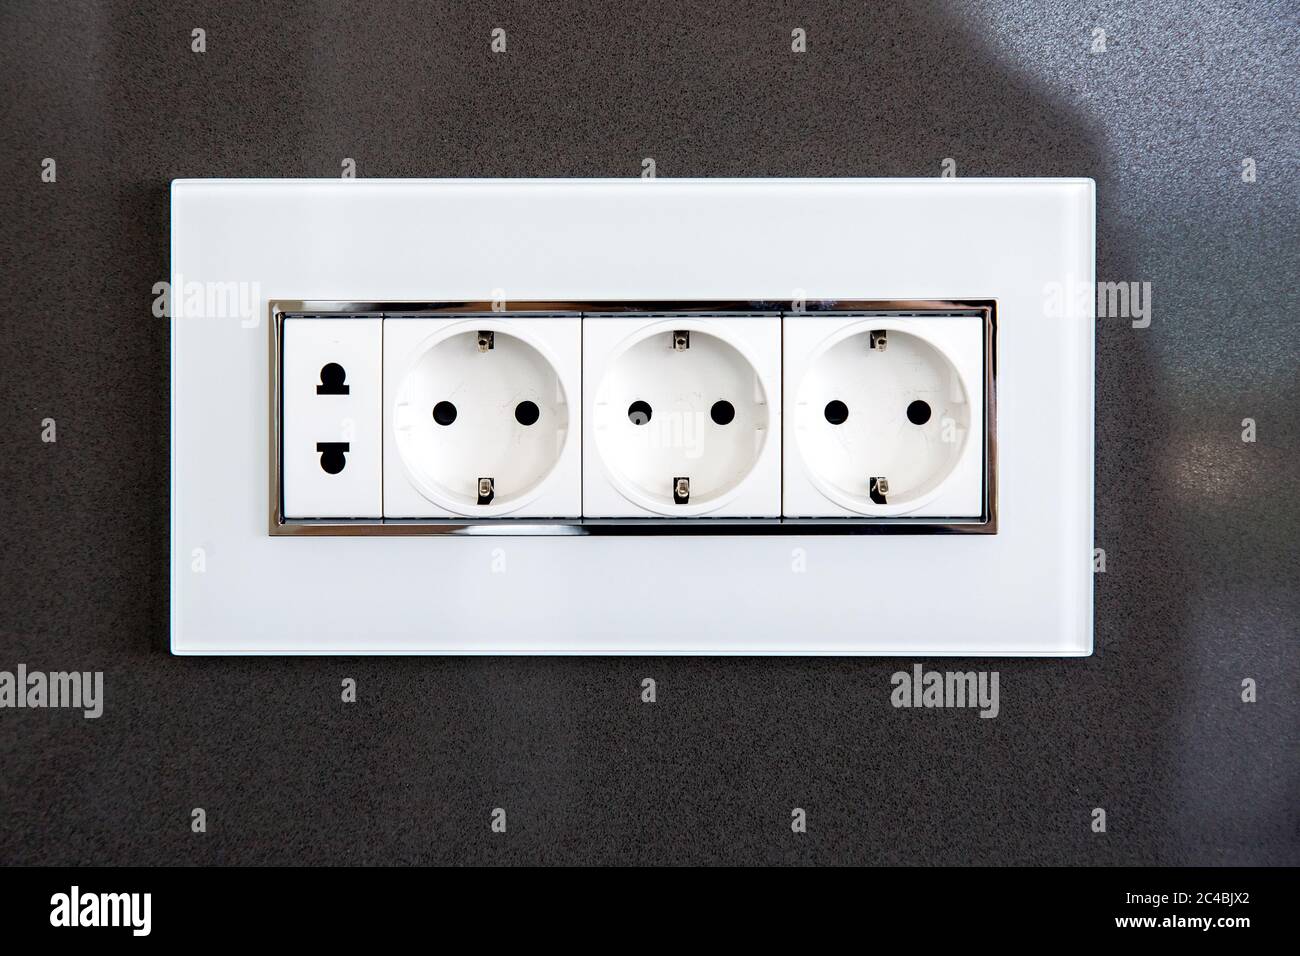 Steckdose mit Steckern für Standard-Stecker Typ A und Standard-Stecker Typ F  in weißem Kunststoffgehäuse an einer dunkelgrauen, glänzenden Steinwand  Stockfotografie - Alamy